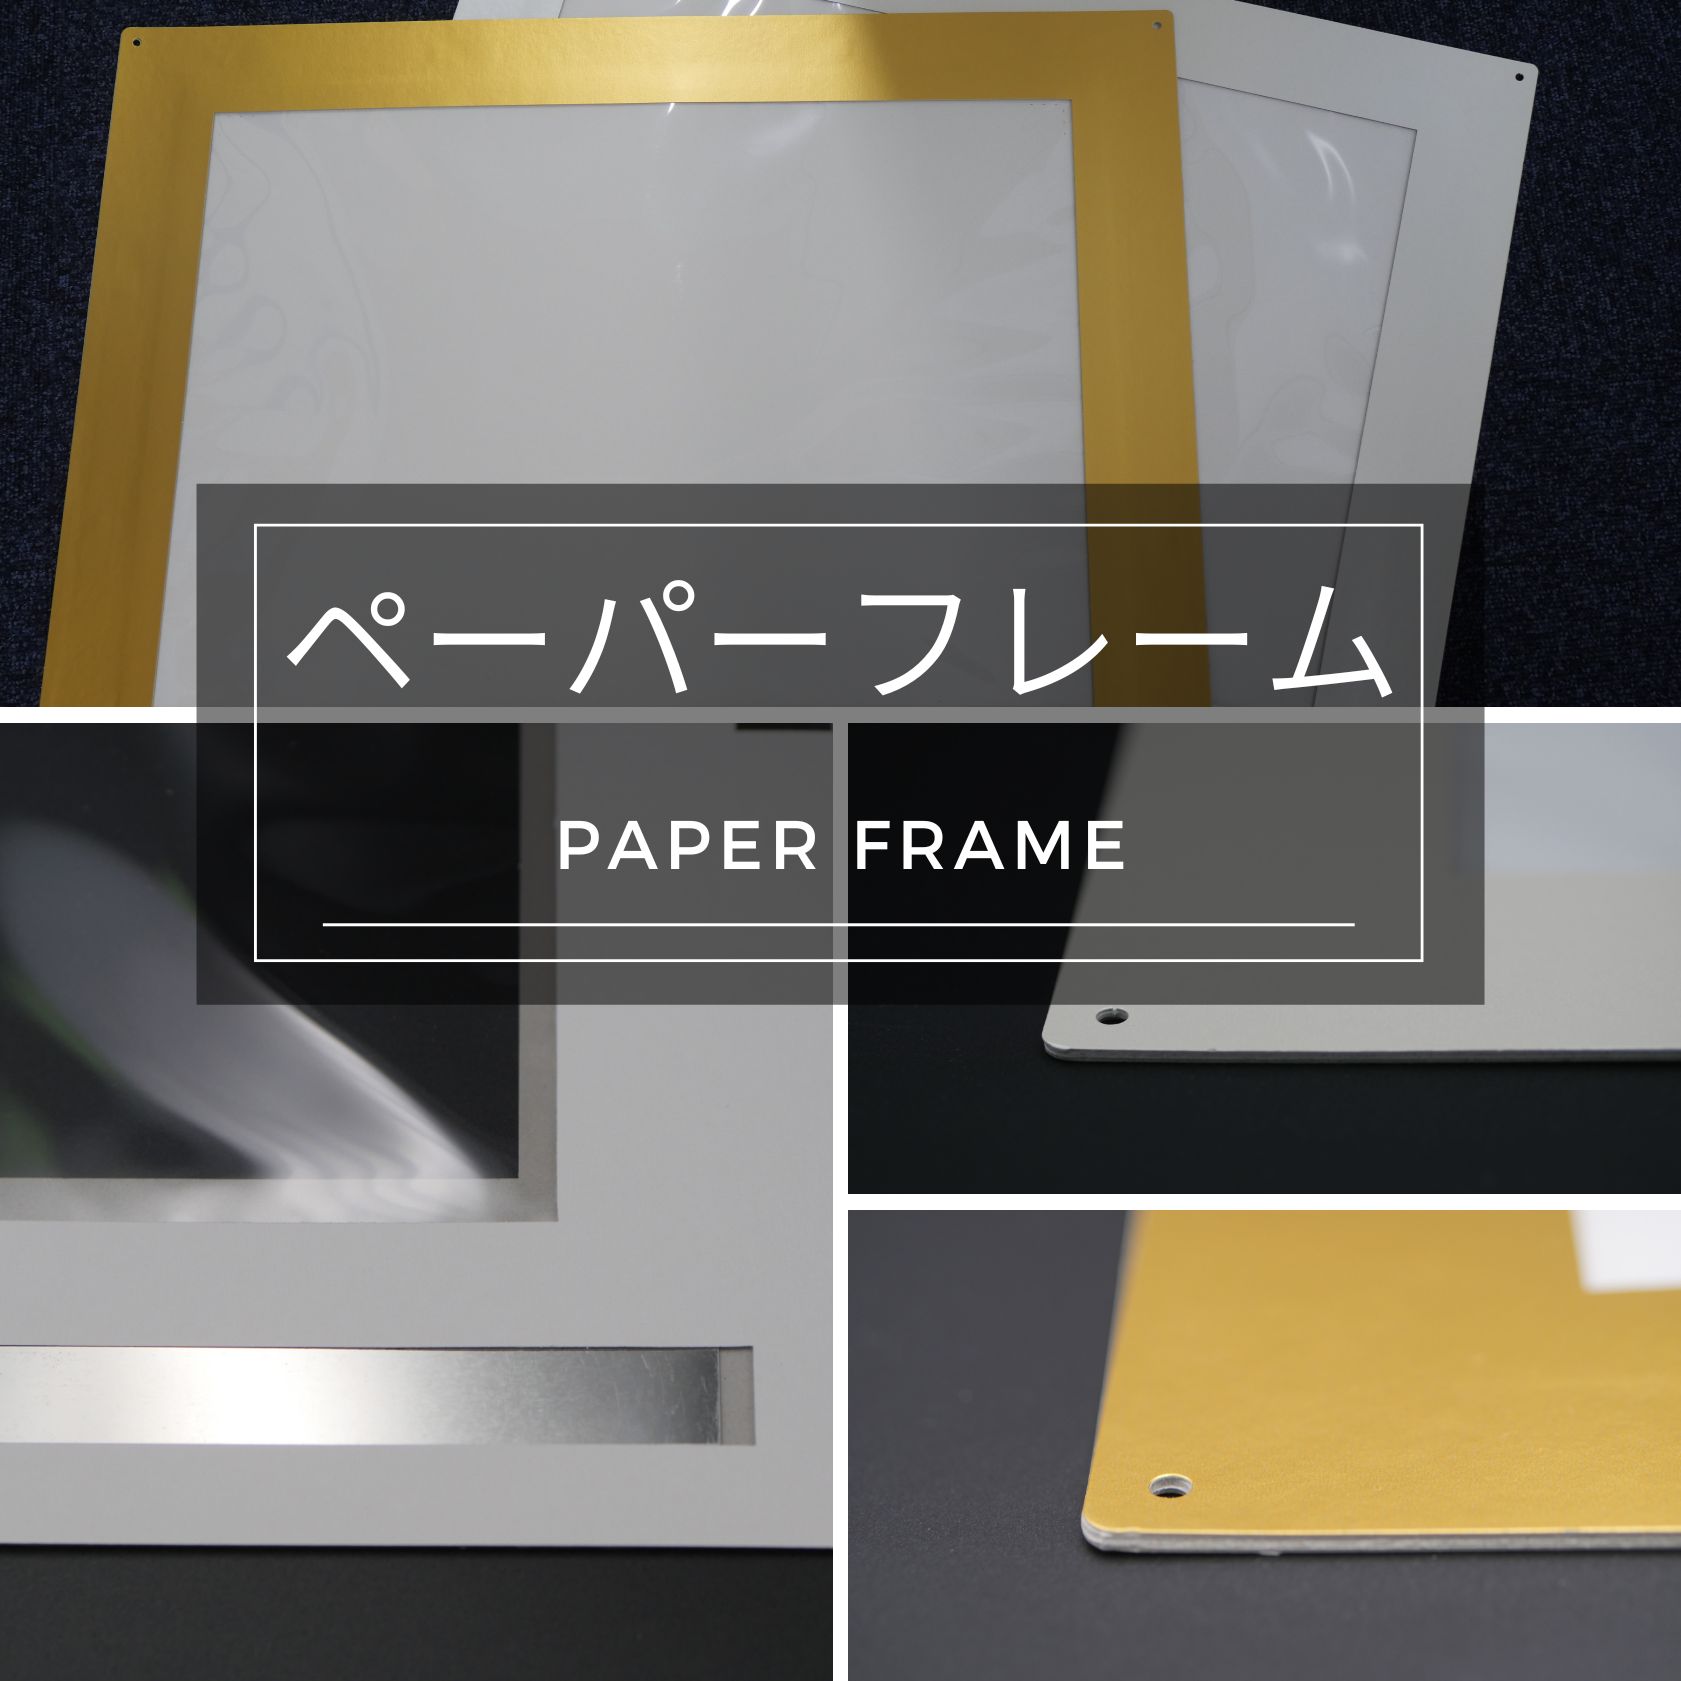 paper-frame.jpg